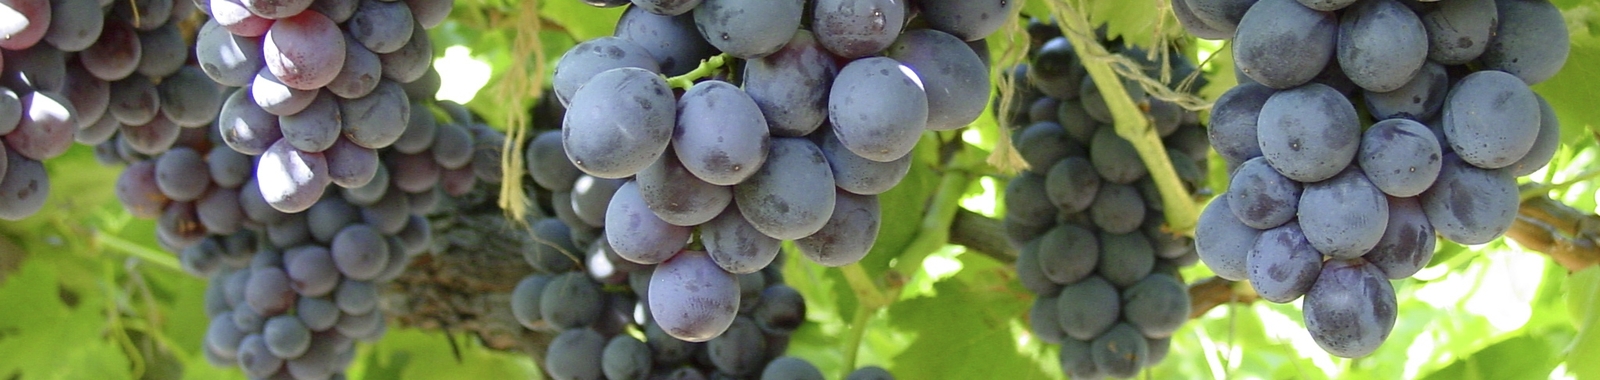 Tamaño y forma de la uva